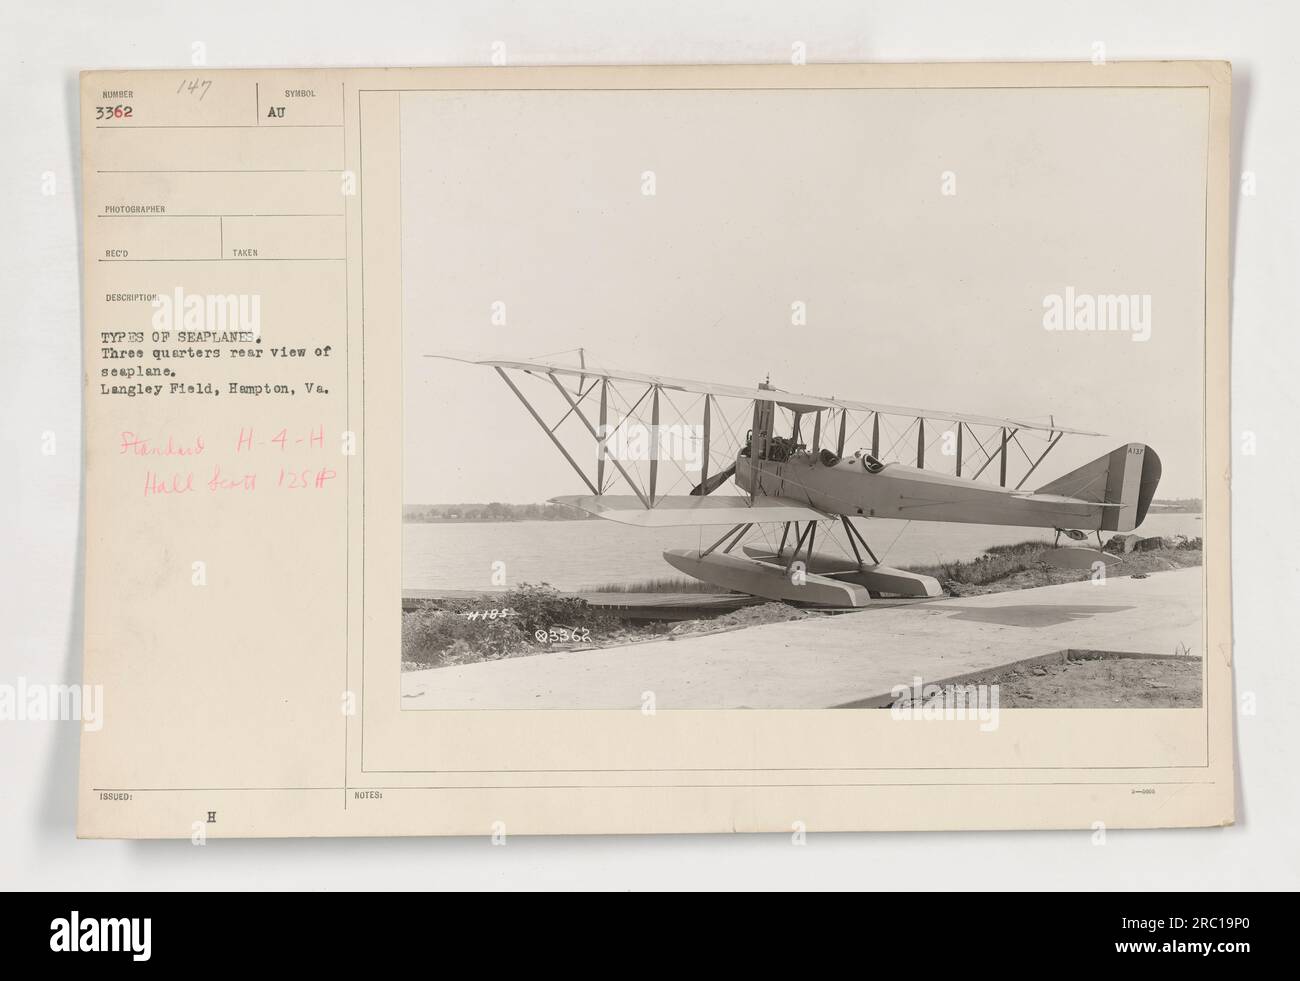 Drei Viertel Rückansicht eines Wasserflugzeugs in Langley Field, Hampton, VA. Das Wasserflugzeug ist ein Standard-H-4-H-Modell mit einem Hall Scott-Motor mit 125 PS. Das Foto ist Teil einer größeren Sammlung, die zu Aufklärungszwecken aufgenommen wurde, um verschiedene Arten von Wasserflugzeugen während des Ersten Weltkriegs zu dokumentieren. Stockfoto